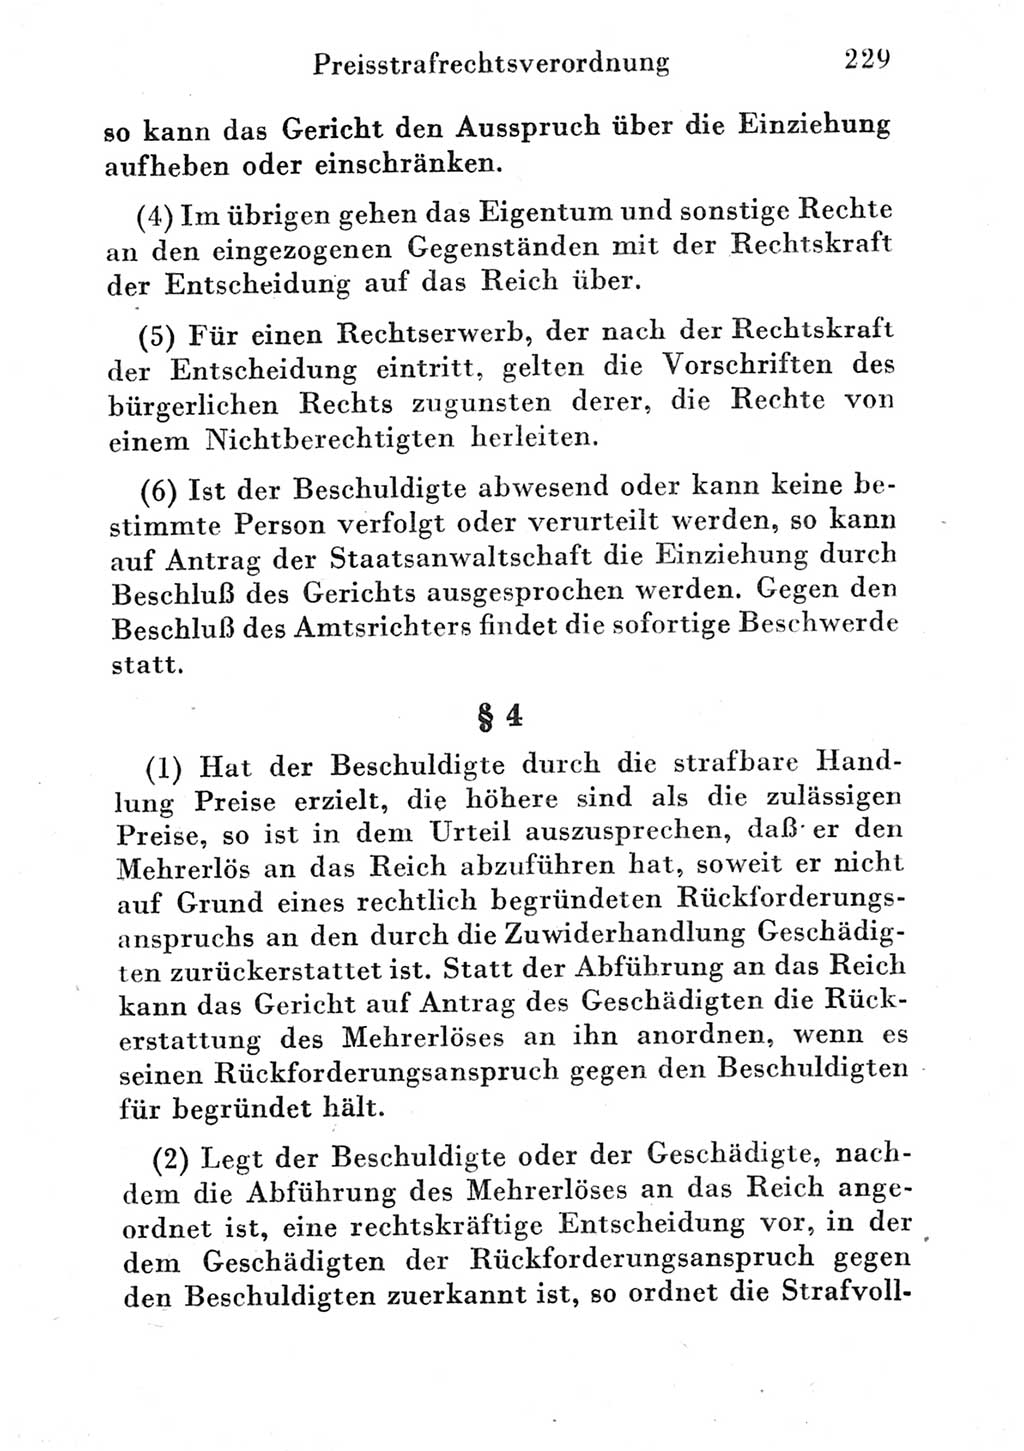 Strafgesetzbuch (StGB) und andere Strafgesetze [Deutsche Demokratische Republik (DDR)] 1951, Seite 229 (StGB Strafges. DDR 1951, S. 229)